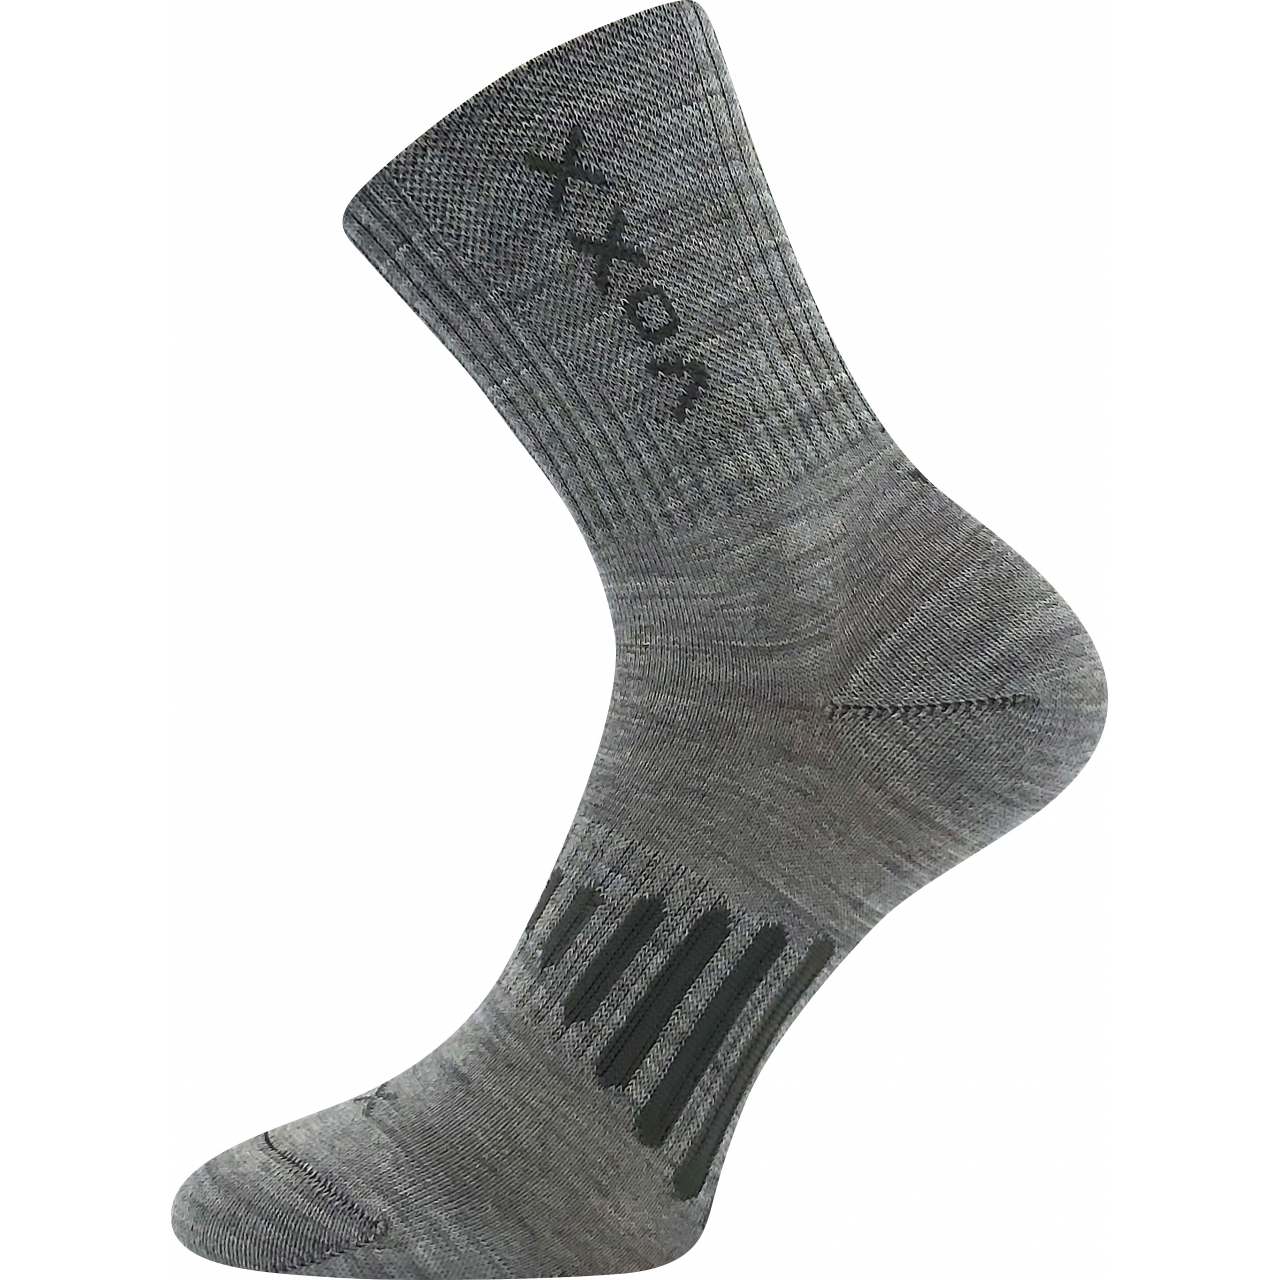 Ponožky unisex sportovní Voxx Powrix - světle šedé, 43-46